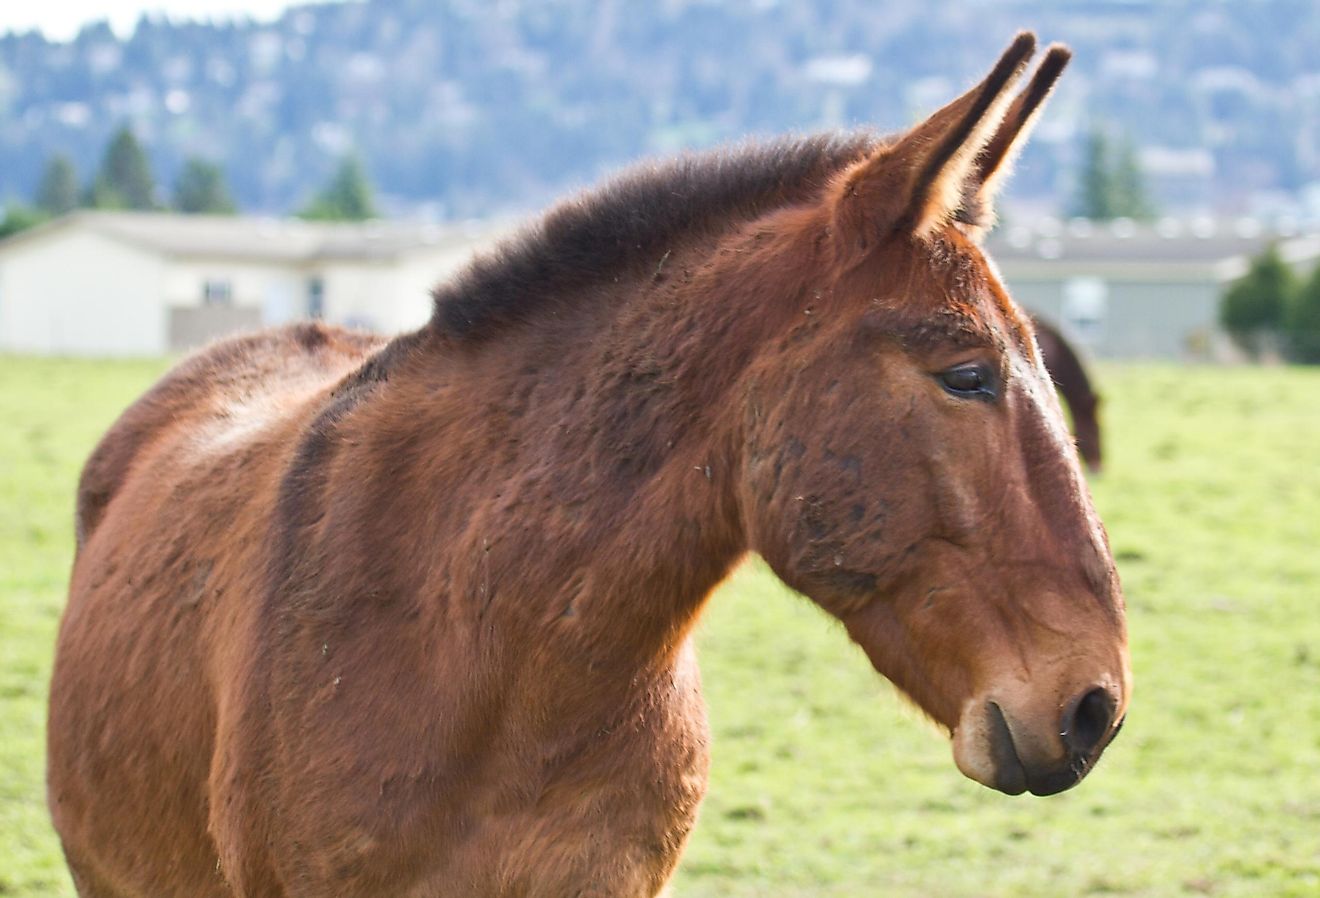 A mule. 